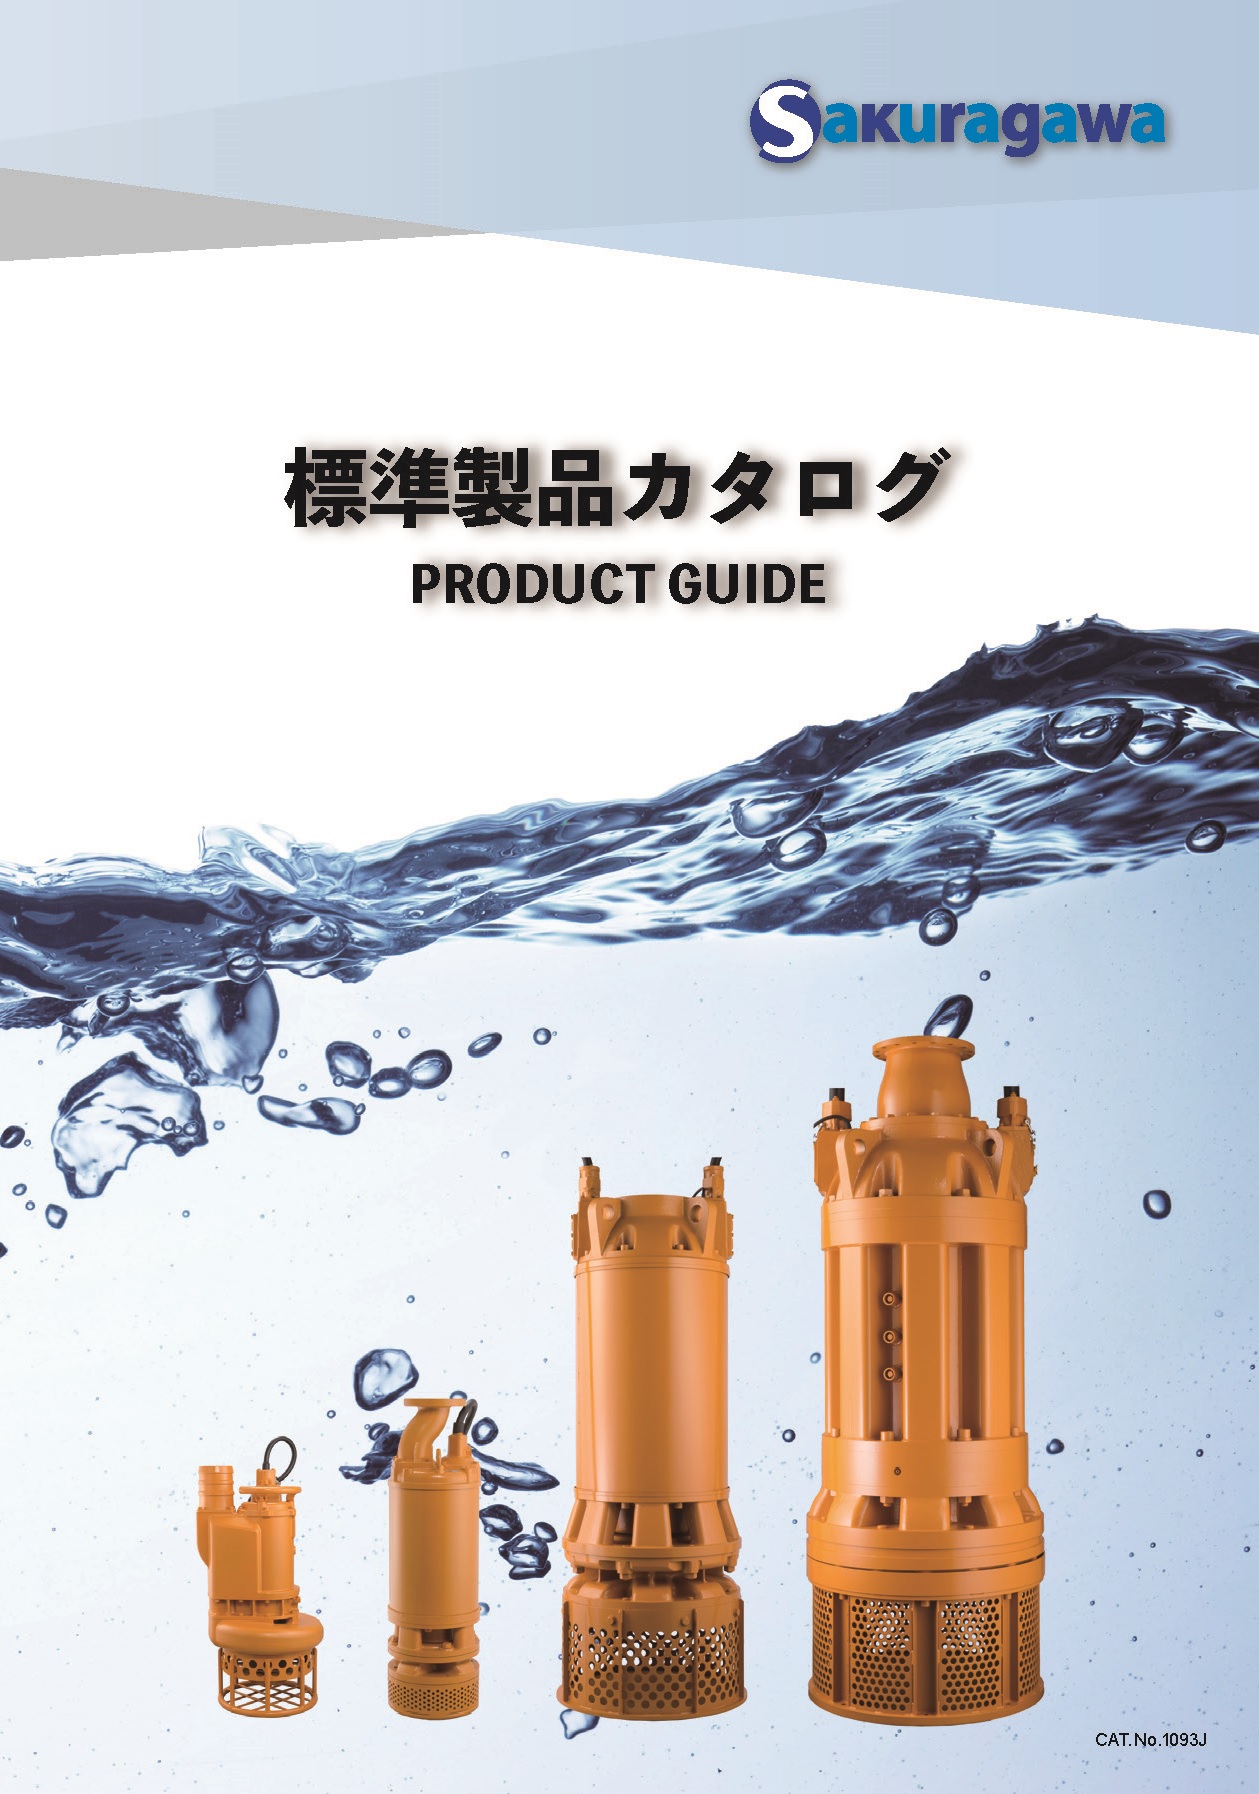 Jシリーズ | 製品情報 | 櫻川ポンプ製作所